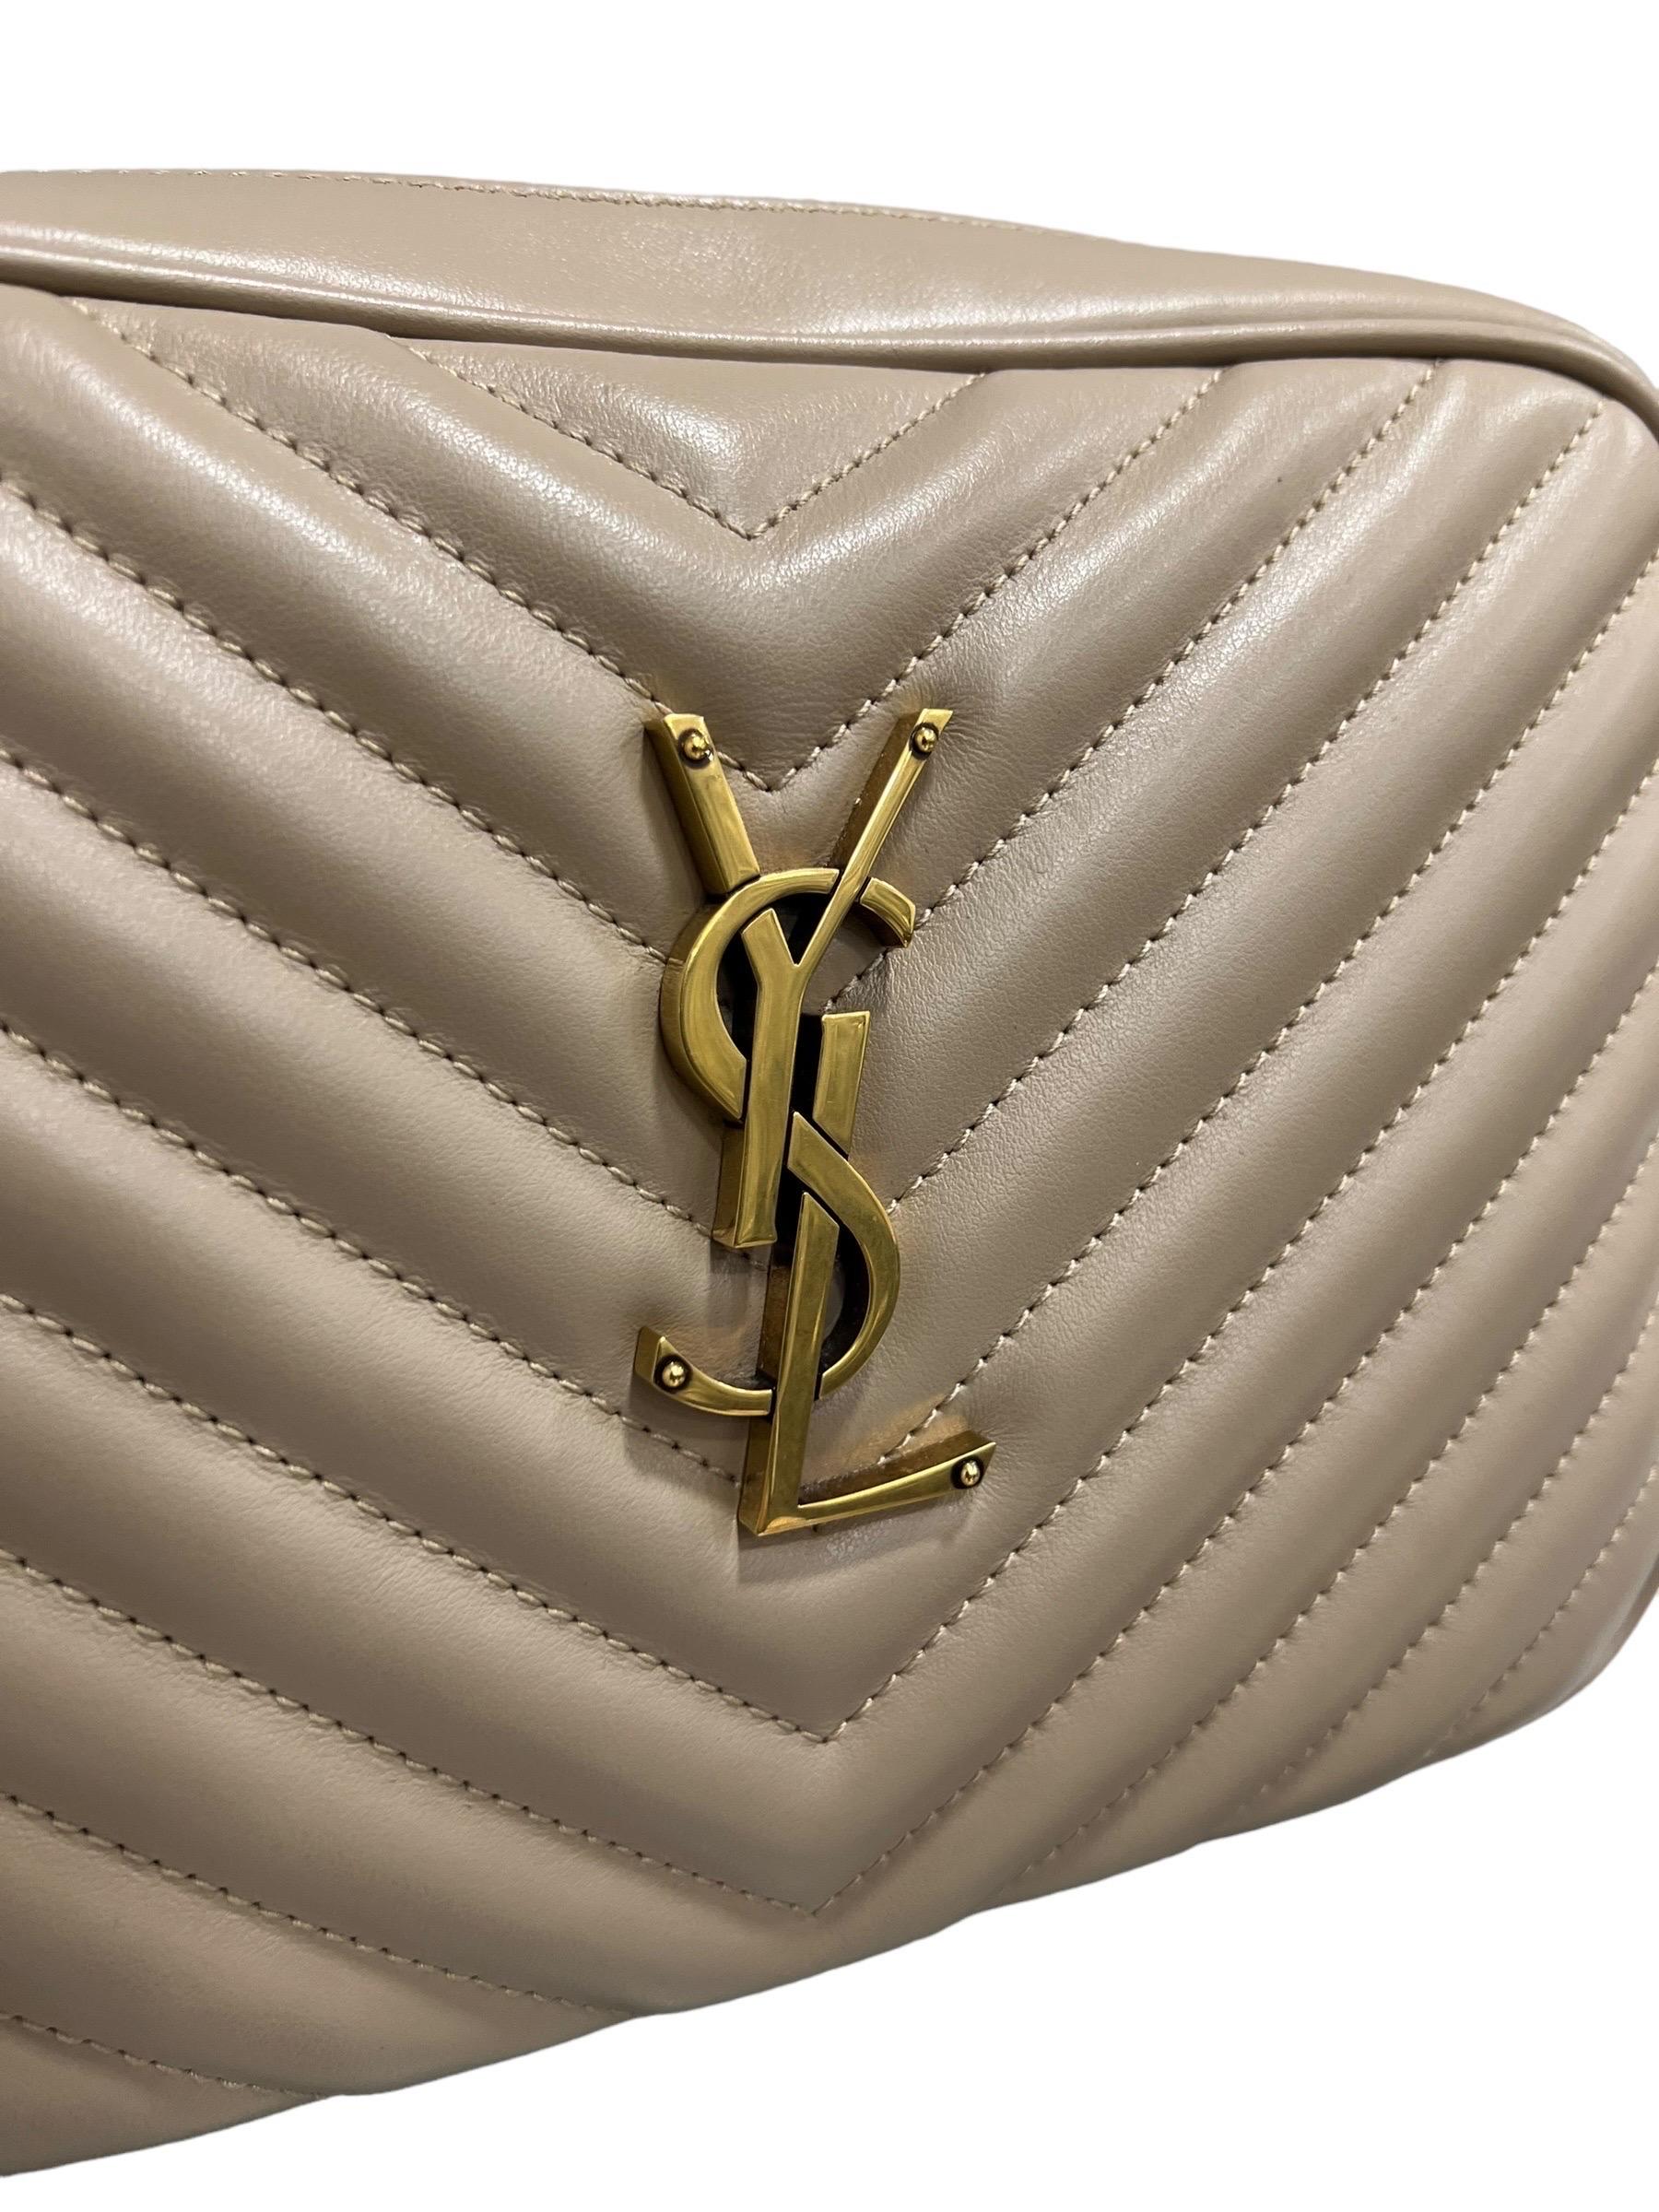 Borsa firmata Saint Laurent, modello Camera Bag lou, realizzata in pelle trapuntata colore dark beige con hardware dorati. Dotata di una chiusura superiore con zip, internamente rivestita in tessuto nero, abbastanza capiente. Munita di una tracolla